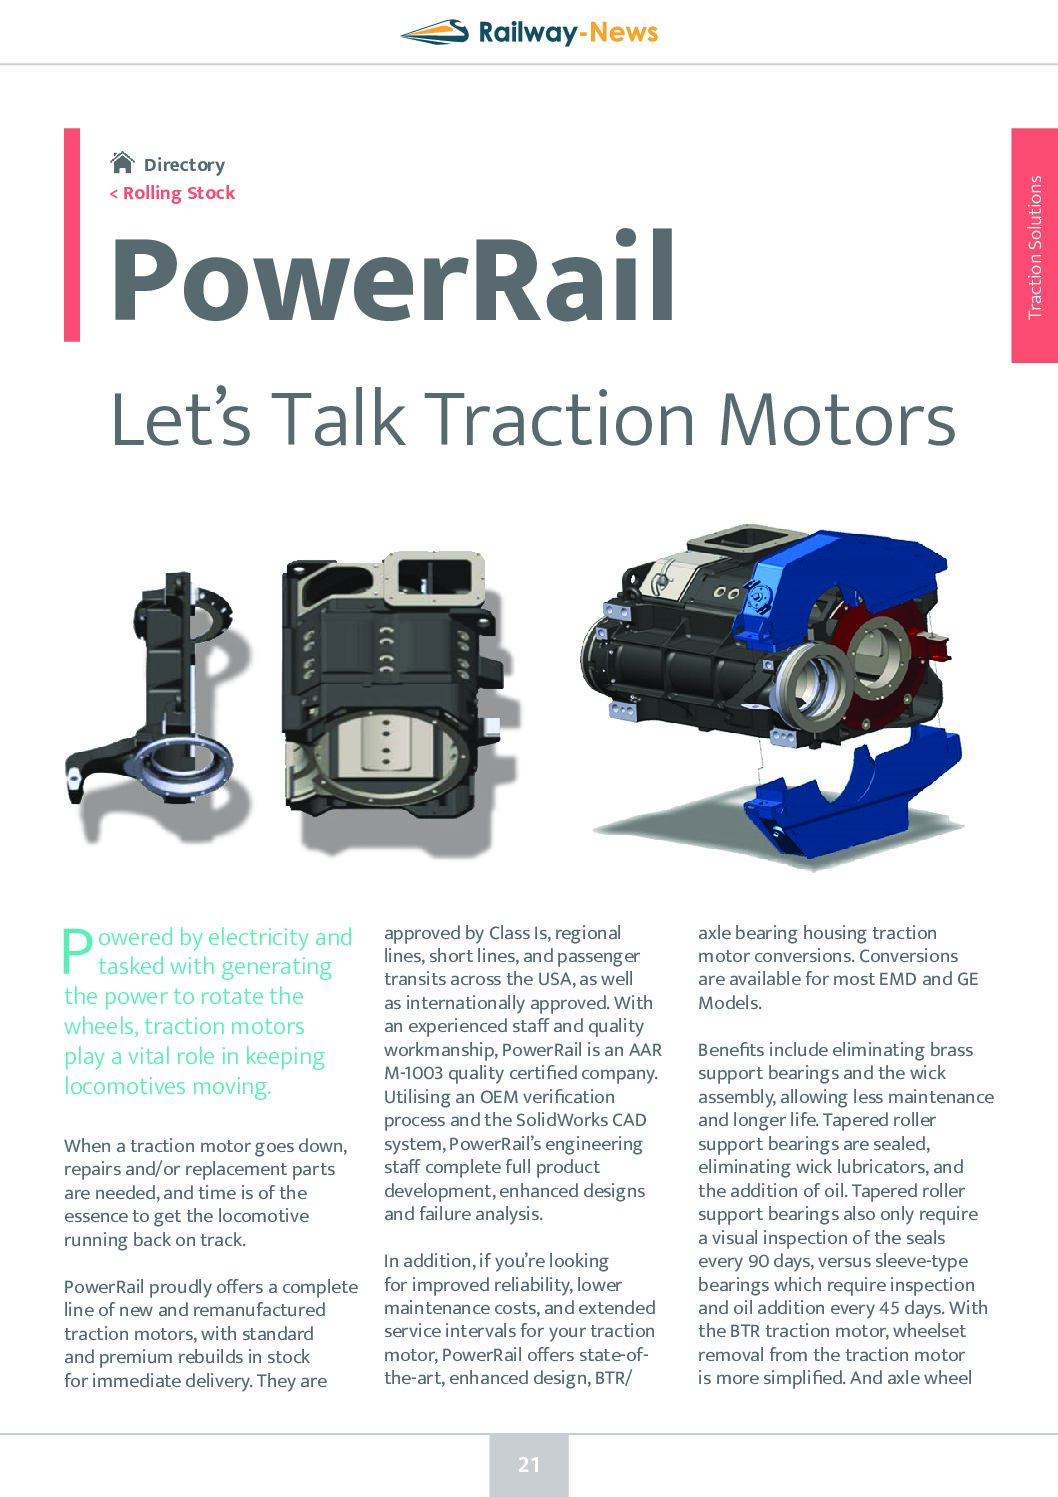 PowerRail – Let’s Talk Traction Motors